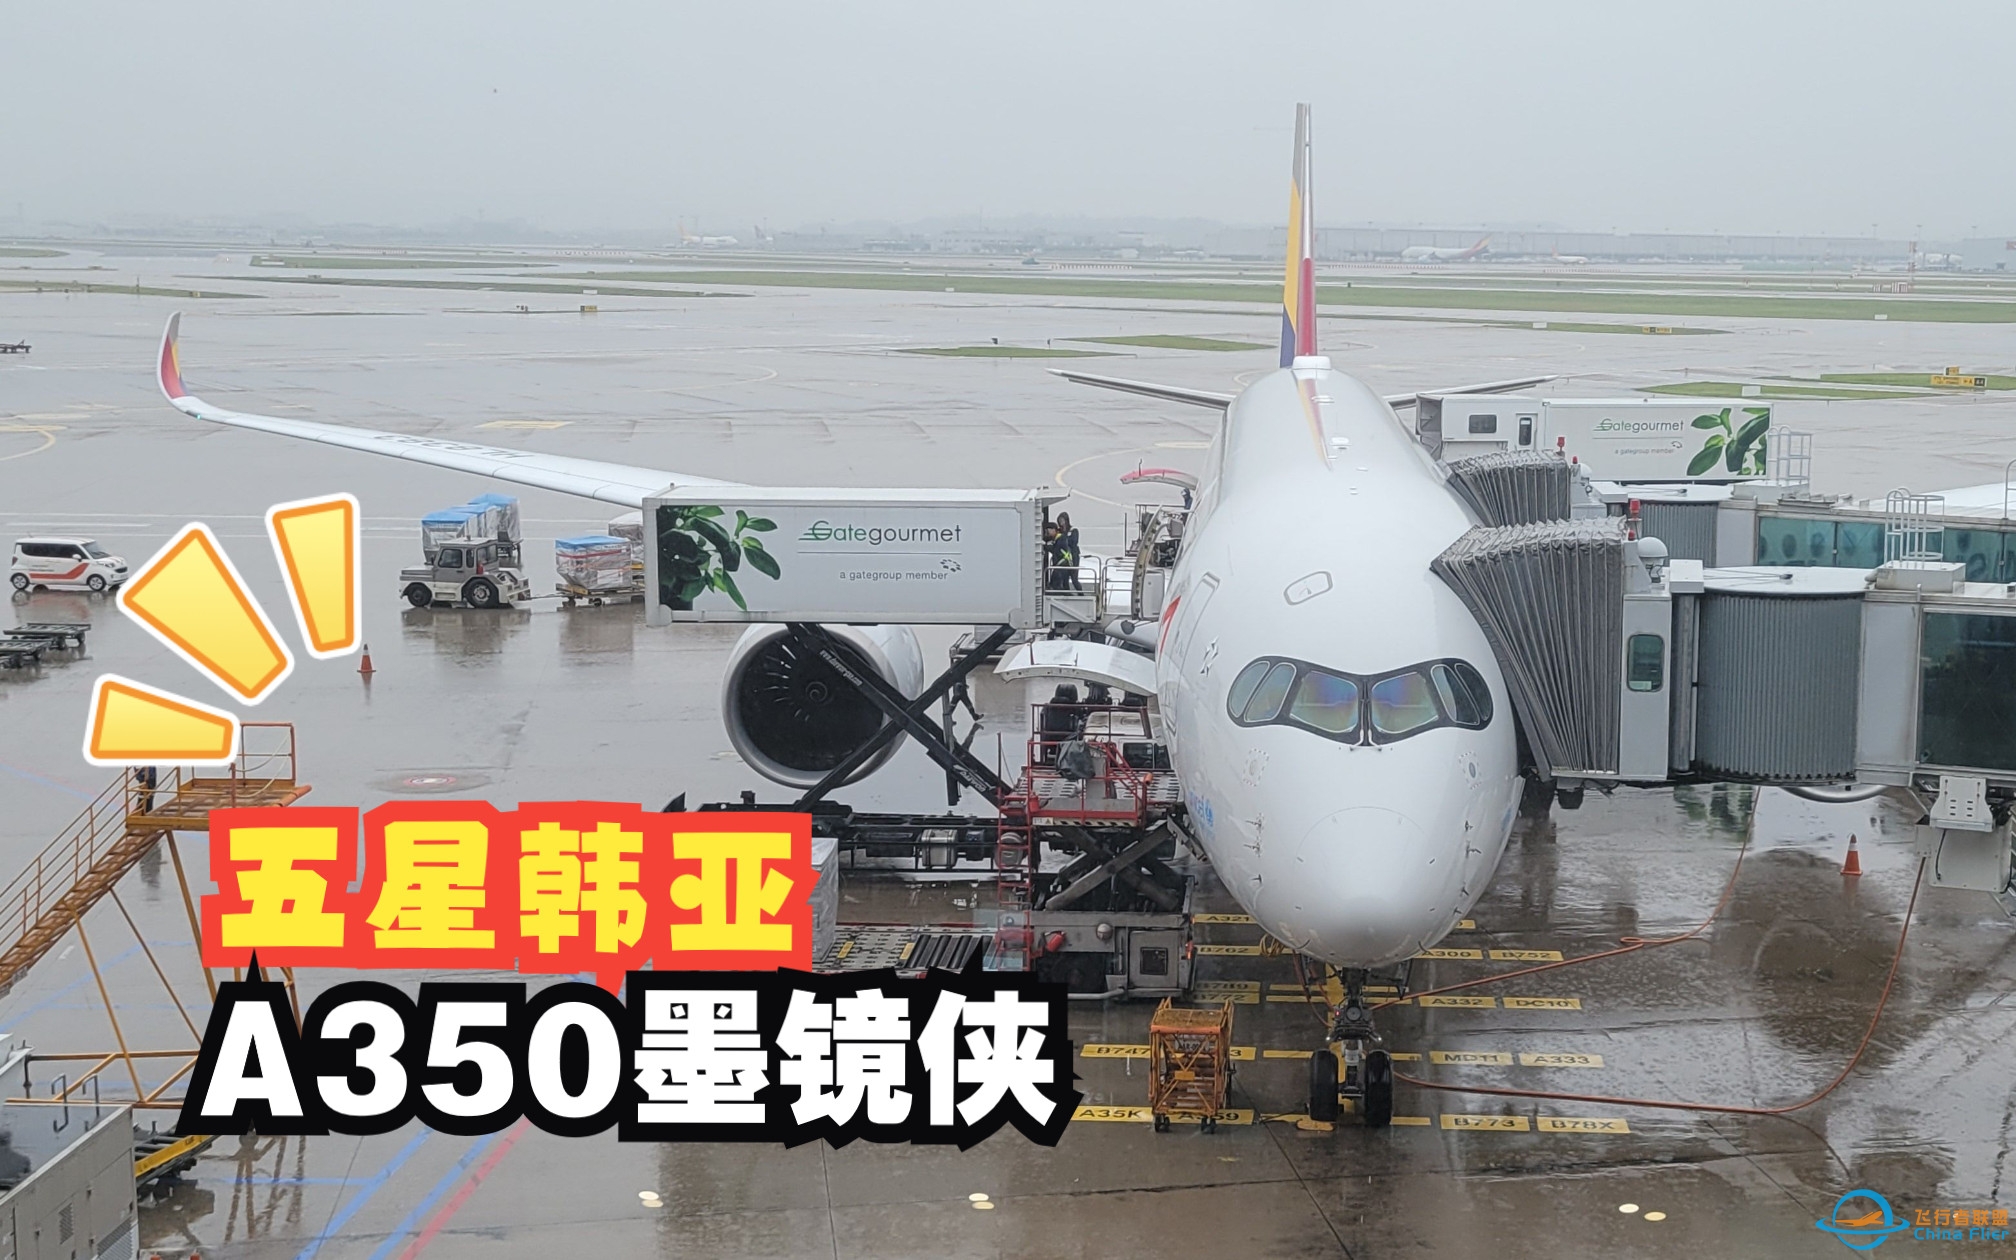 【飞行游记】五星韩亚的新旗舰？韩亚航空A350-900洲际航线飞行体验-517 